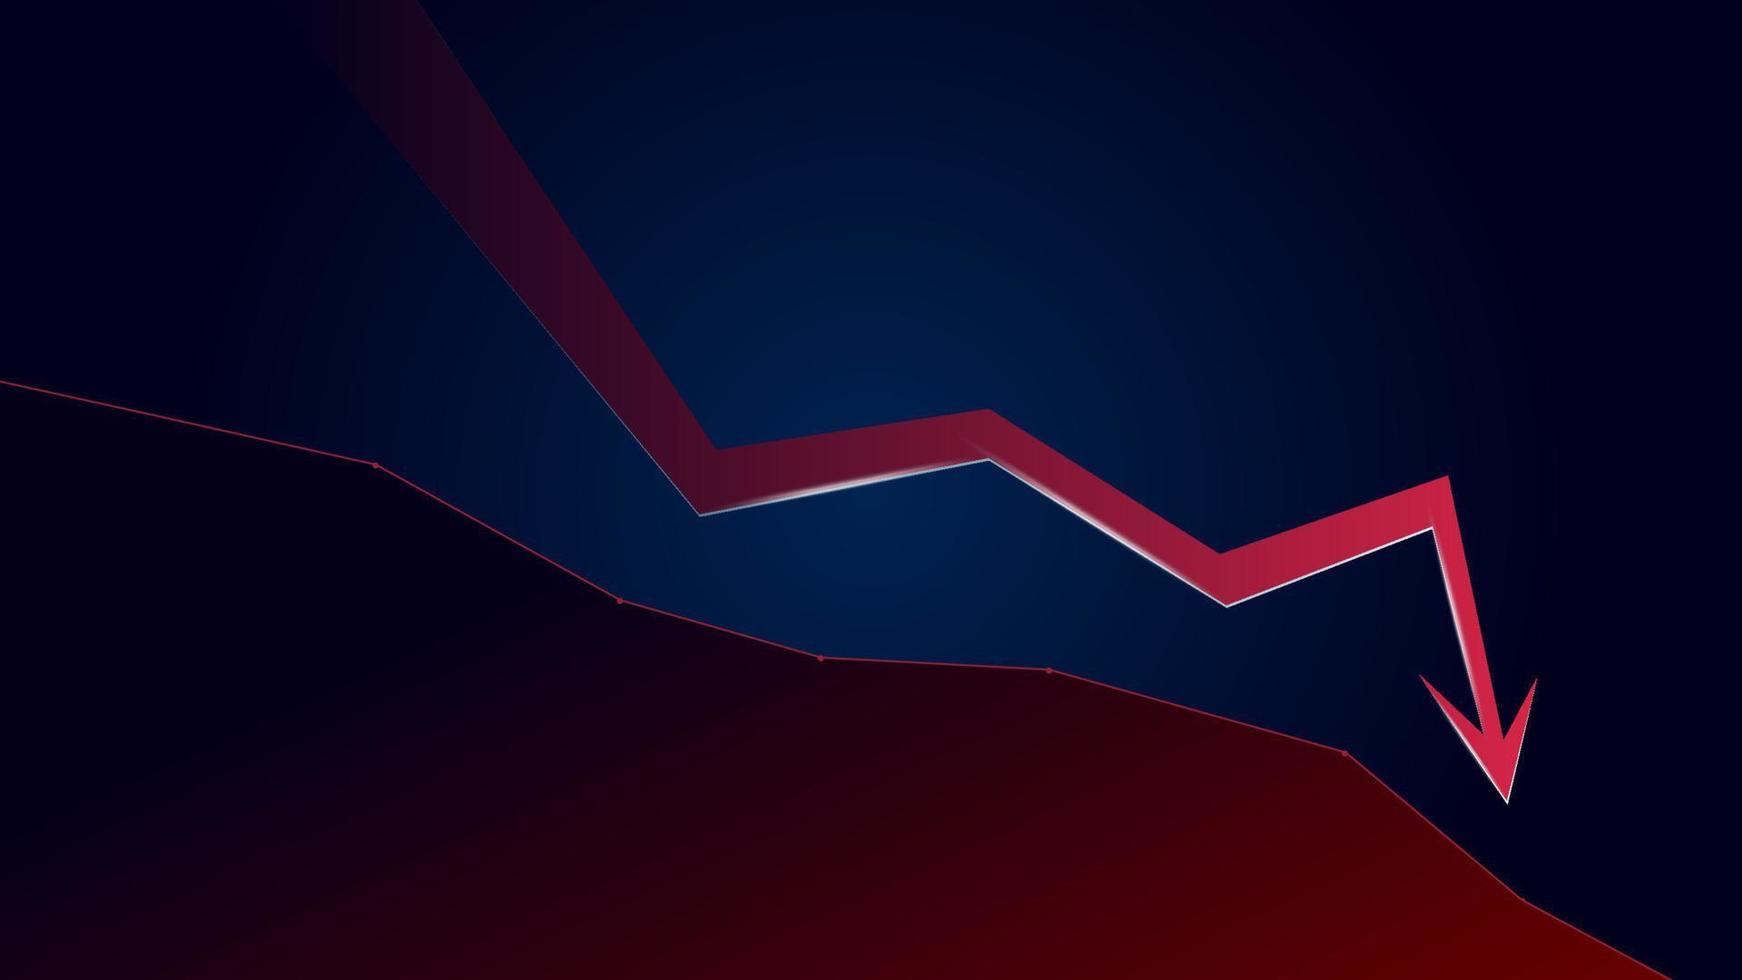 la flecha roja de tendencia bajista y el precio caen con espacio de copia sobre fondo azul oscuro. crisis comercial y caída. ilustración vectorial vector